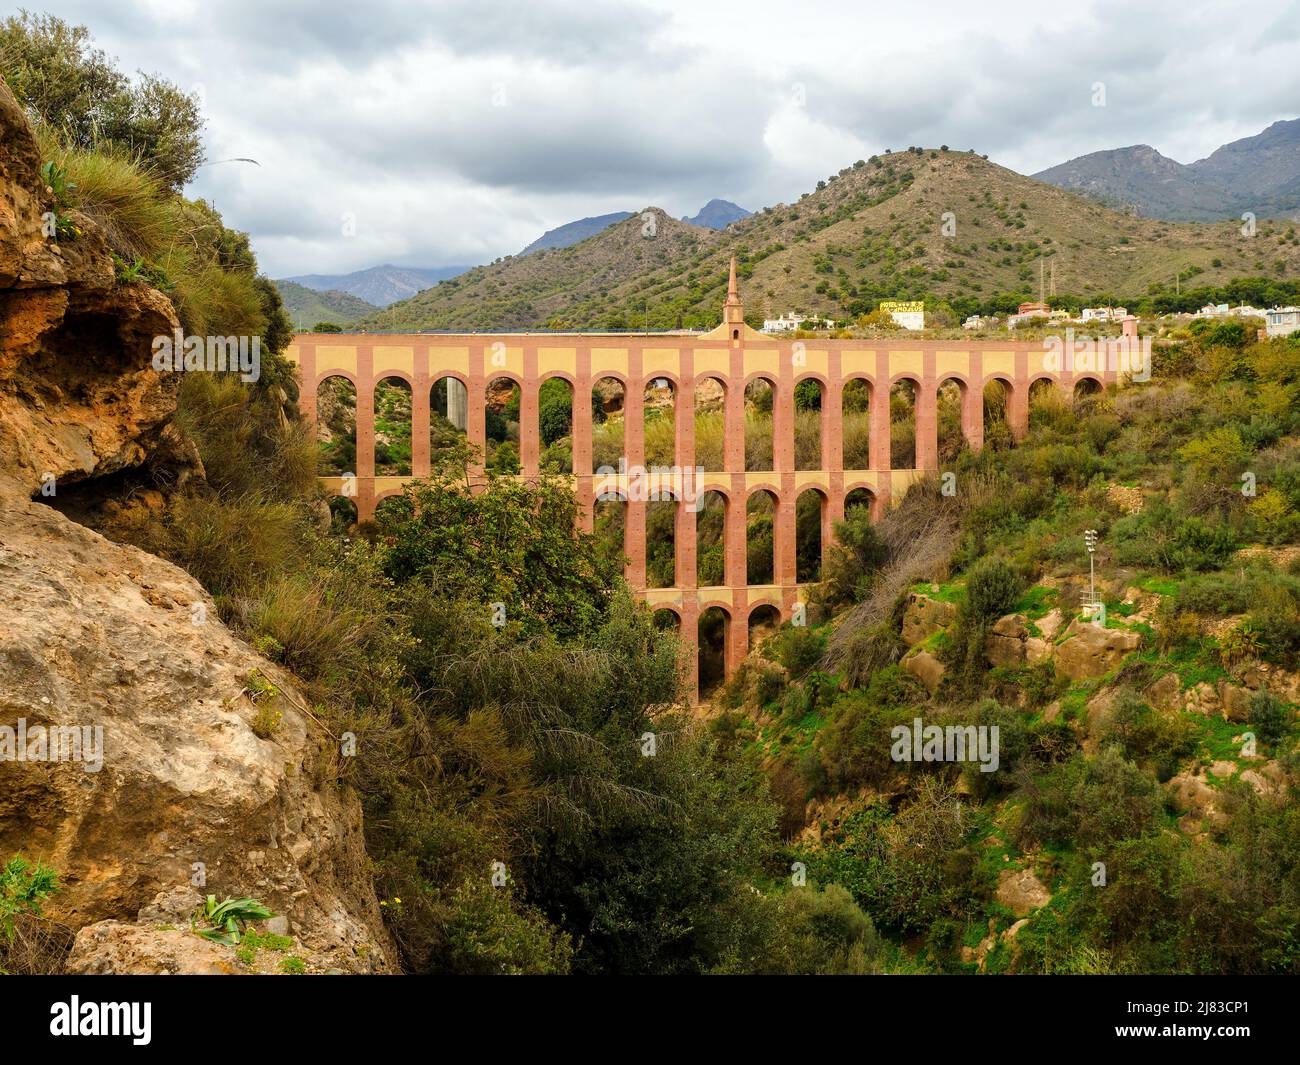 Aqueduct d'aigle près de Nerja construit au 19th siècle - Grenade, Espagne Banque D'Images